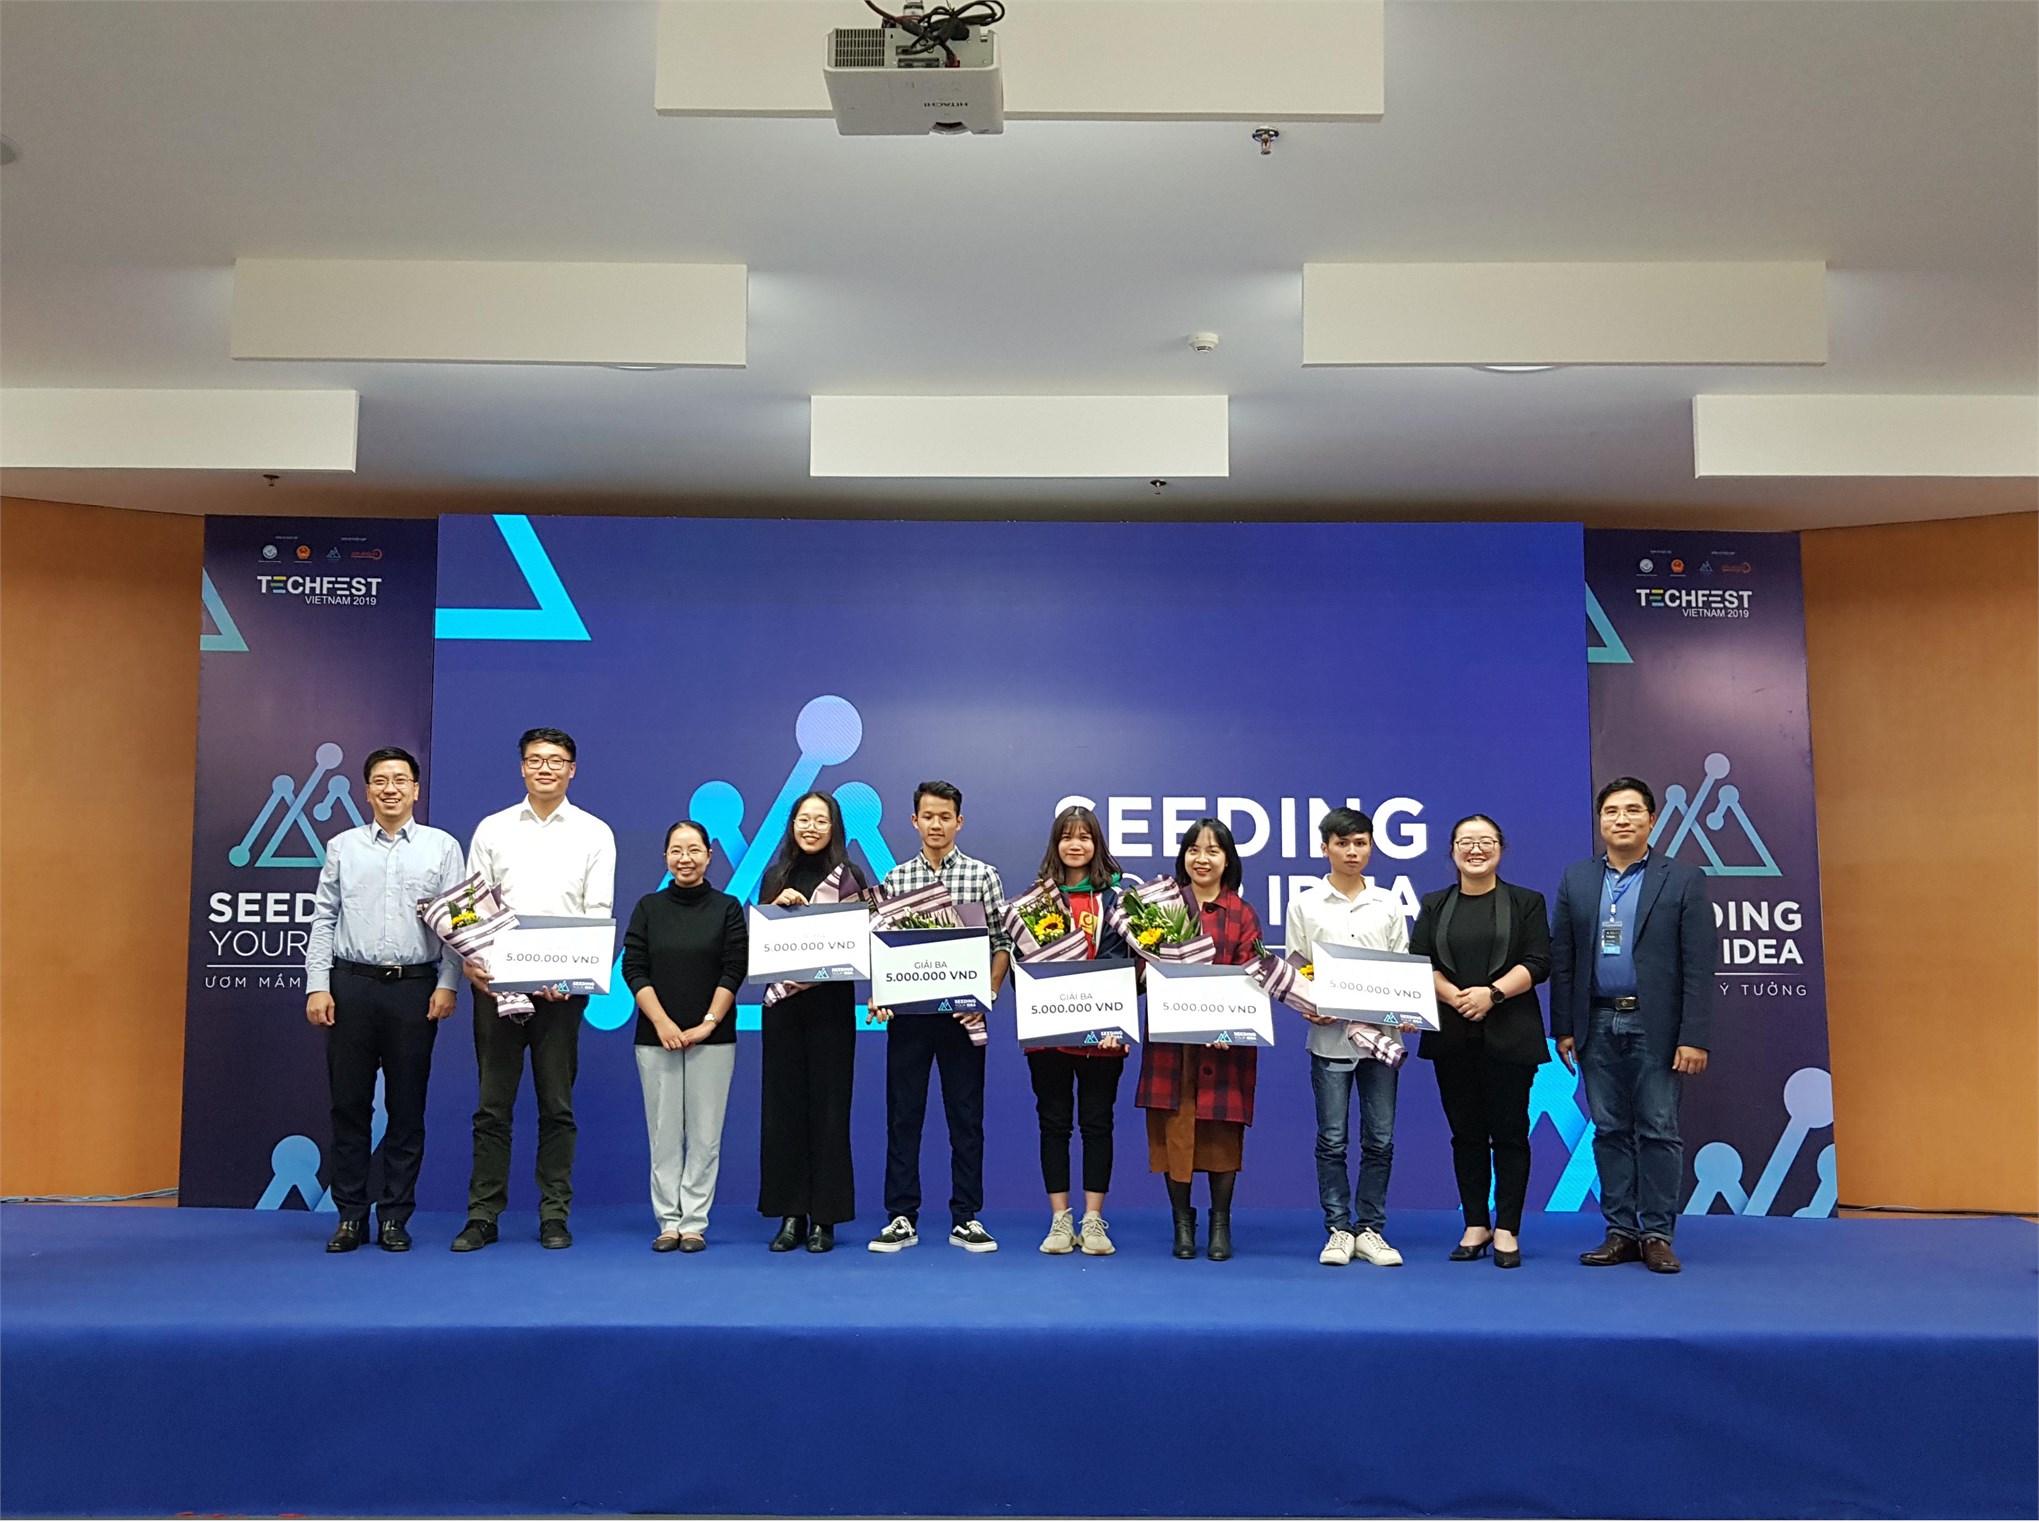 Sinh viên Đại học Công nghiệp Hà Nội đạt giải 01 giải Nhì và 02 giải Ba cuộc thi Seeding your idea – Ngày hội khởi nghiệp sáng tạo đổi mới quốc gia Techfest Vietnam 2019